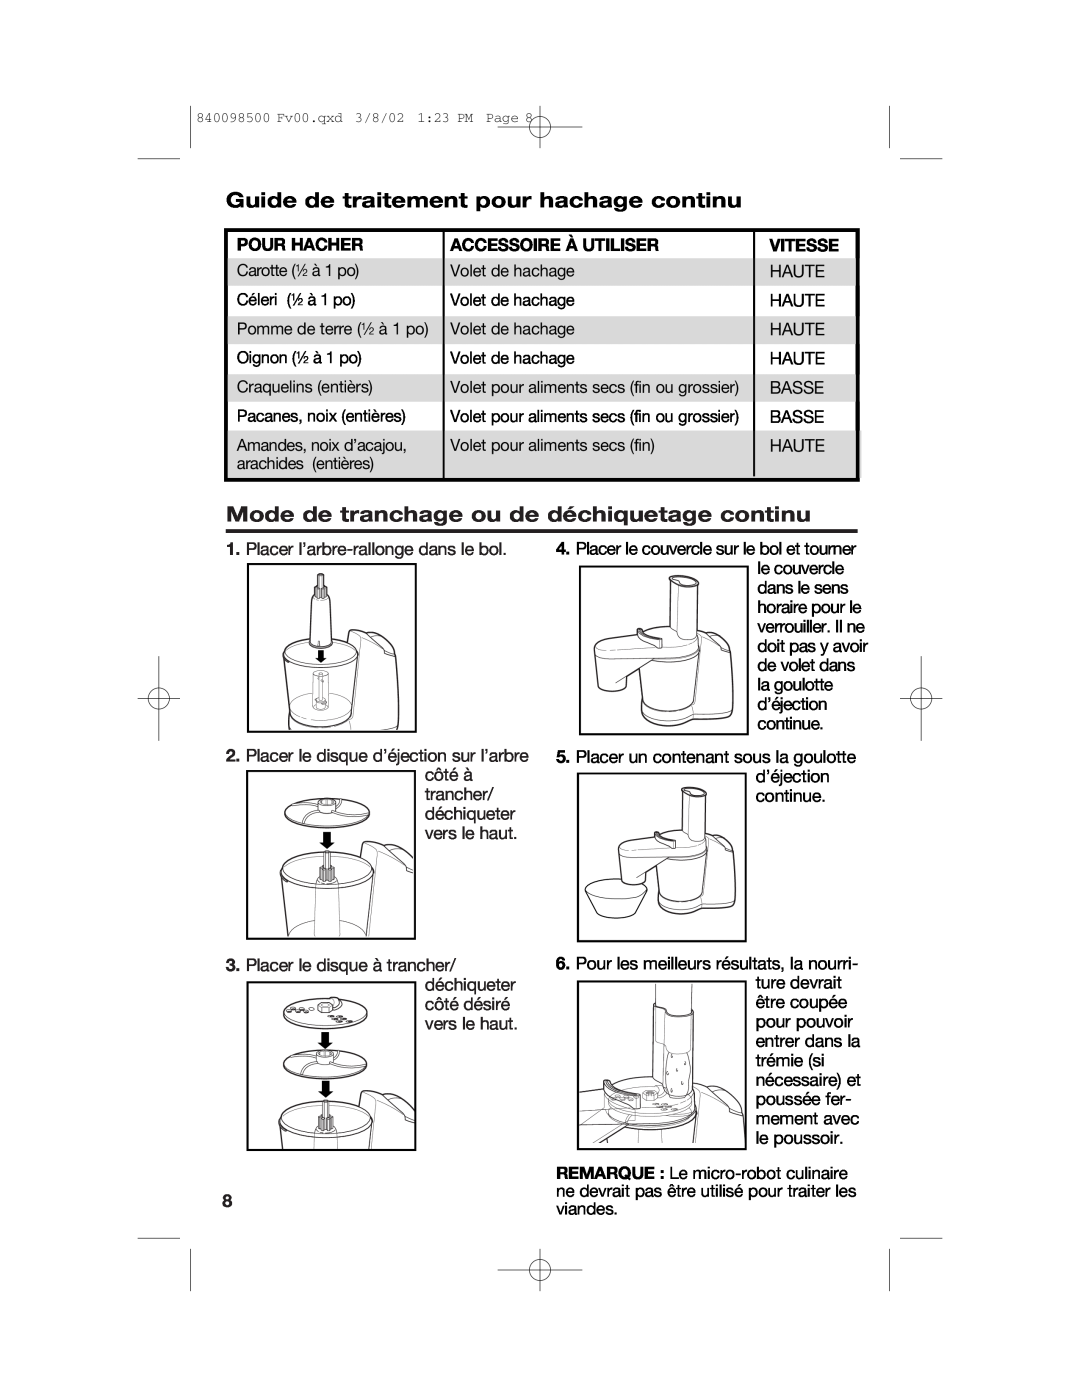 Hamilton Beach 70200 Guide de traitement pour hachage continu, Mode de tranchage ou de déchiquetage continu, Pour Hacher 